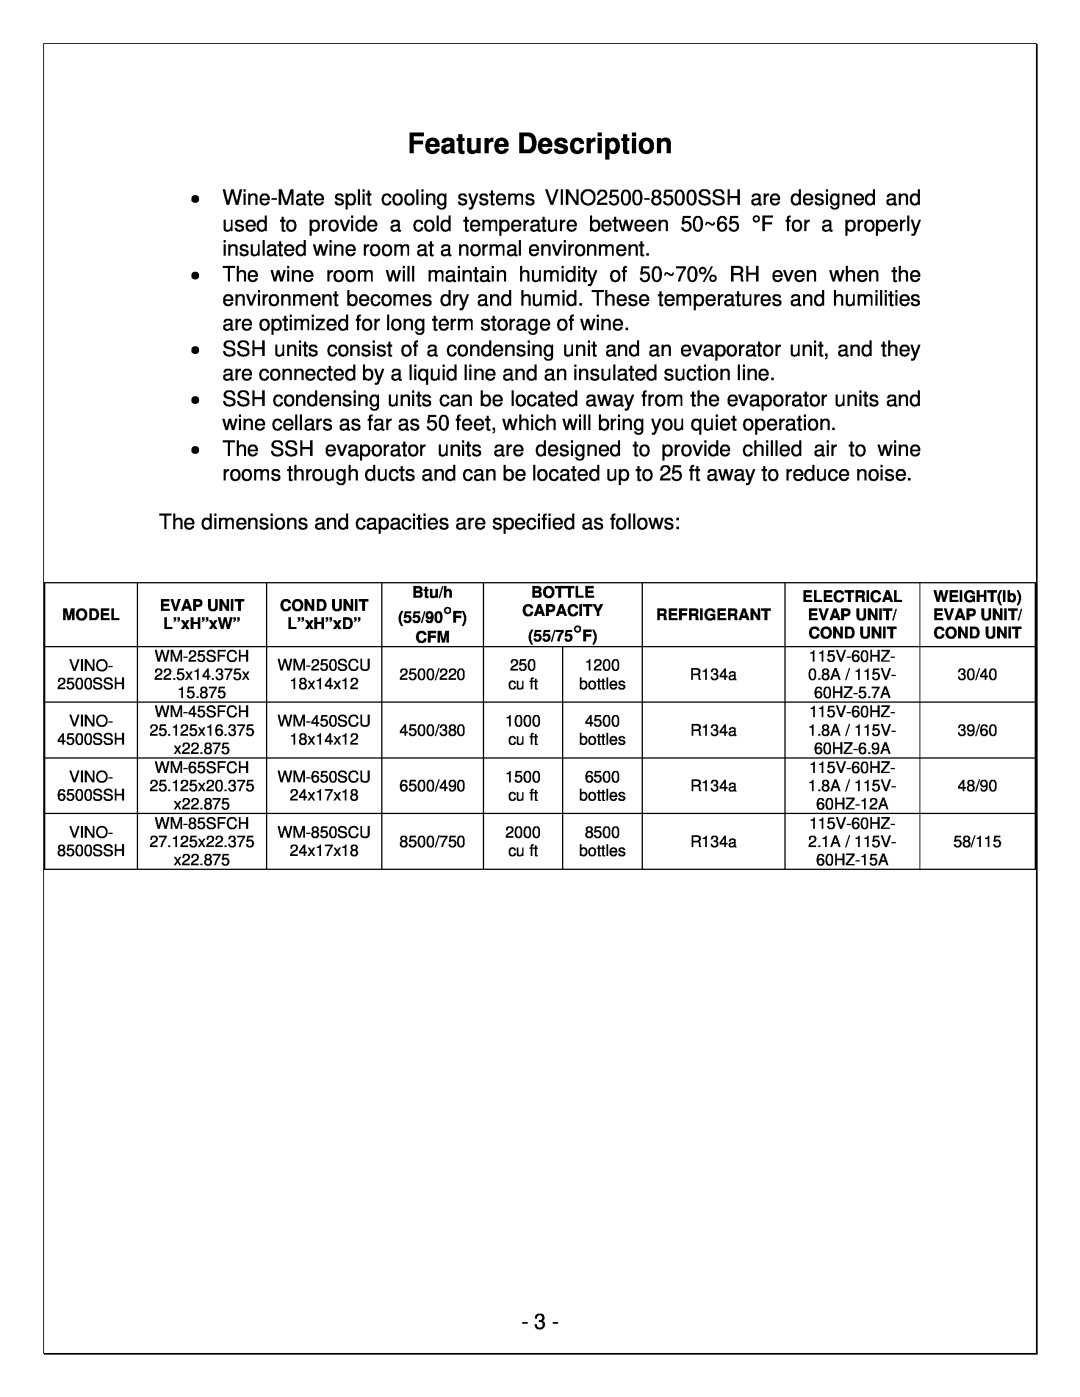 Vinotemp WM-850SCU, VINO6500SSH, VINO4500SSH, VINO8500SSH, WM-85SFCH, WM-65SFCH, WM-45SFCH, WM-25SFCH manual Feature Description 